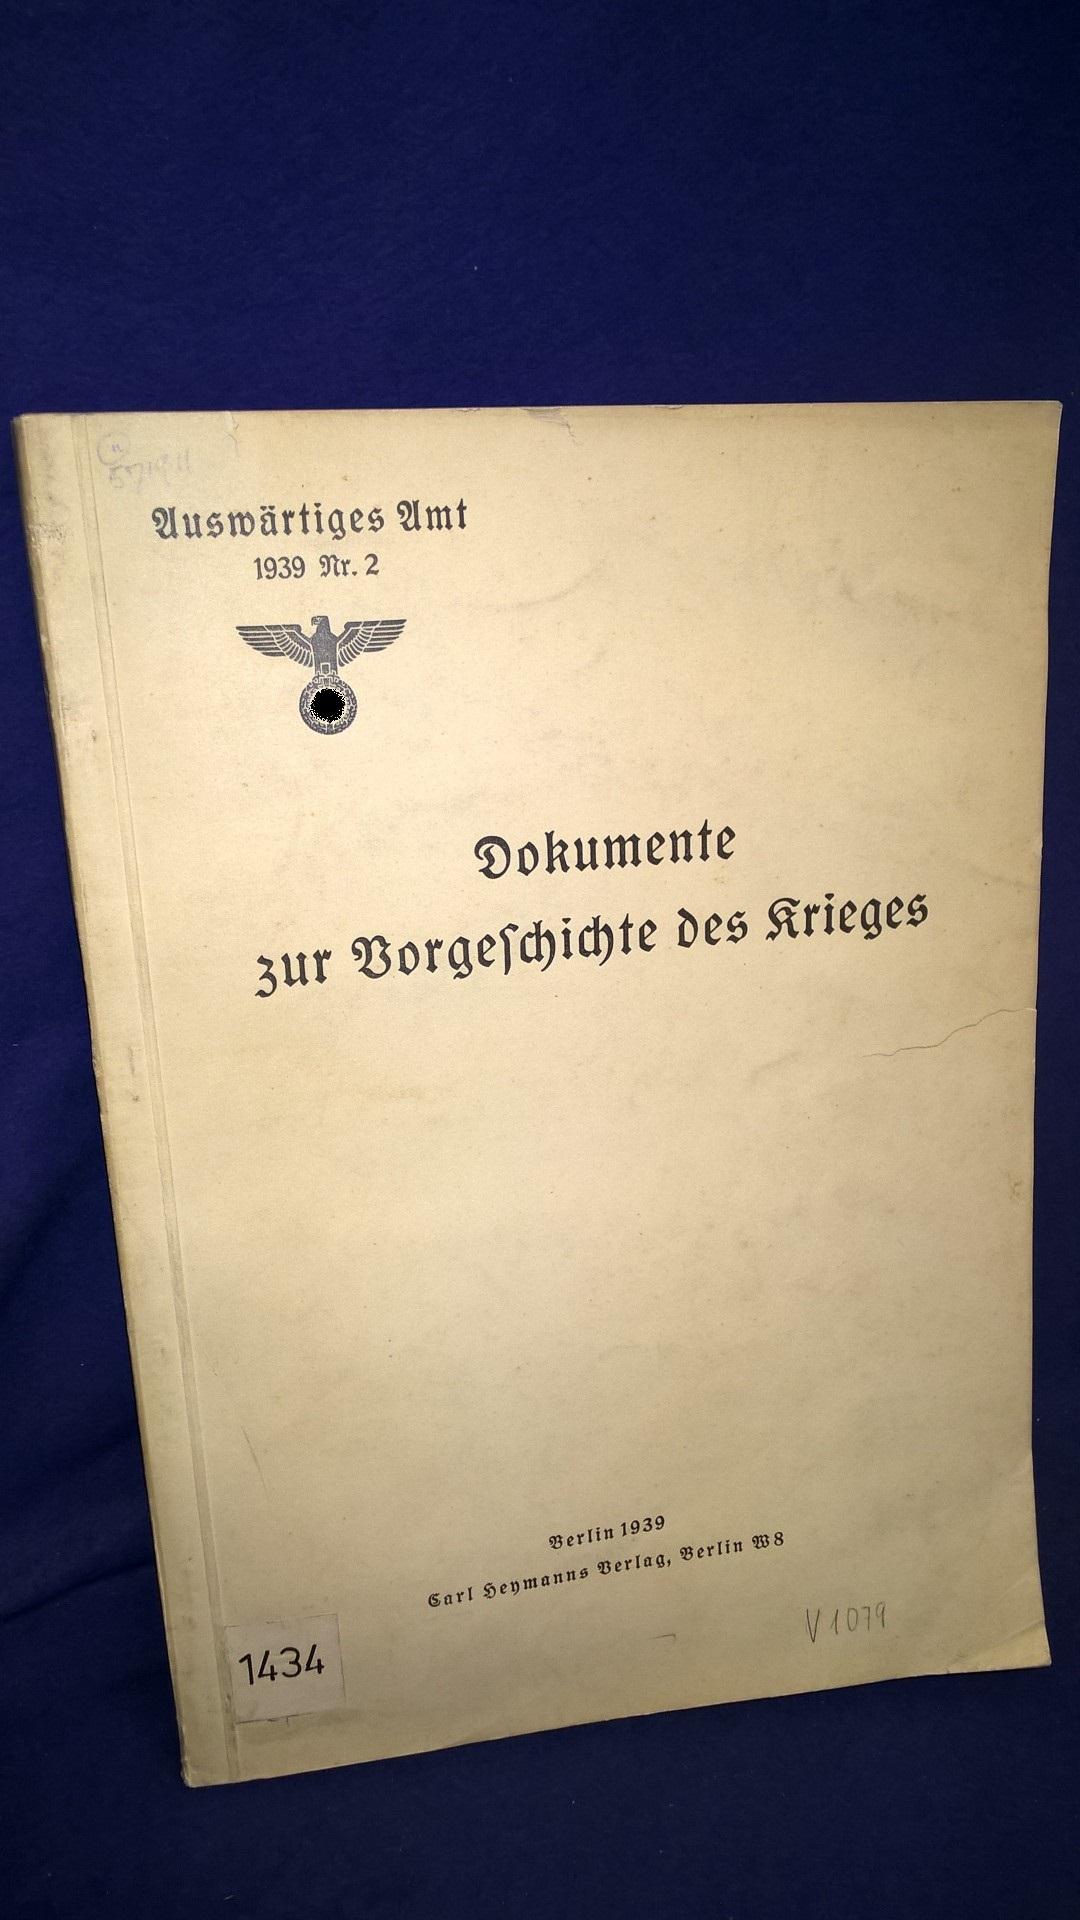 Auswärtiges Amt. 1939 Nr.2.: Dokumente zur Vorgeschichte des Krieges. 